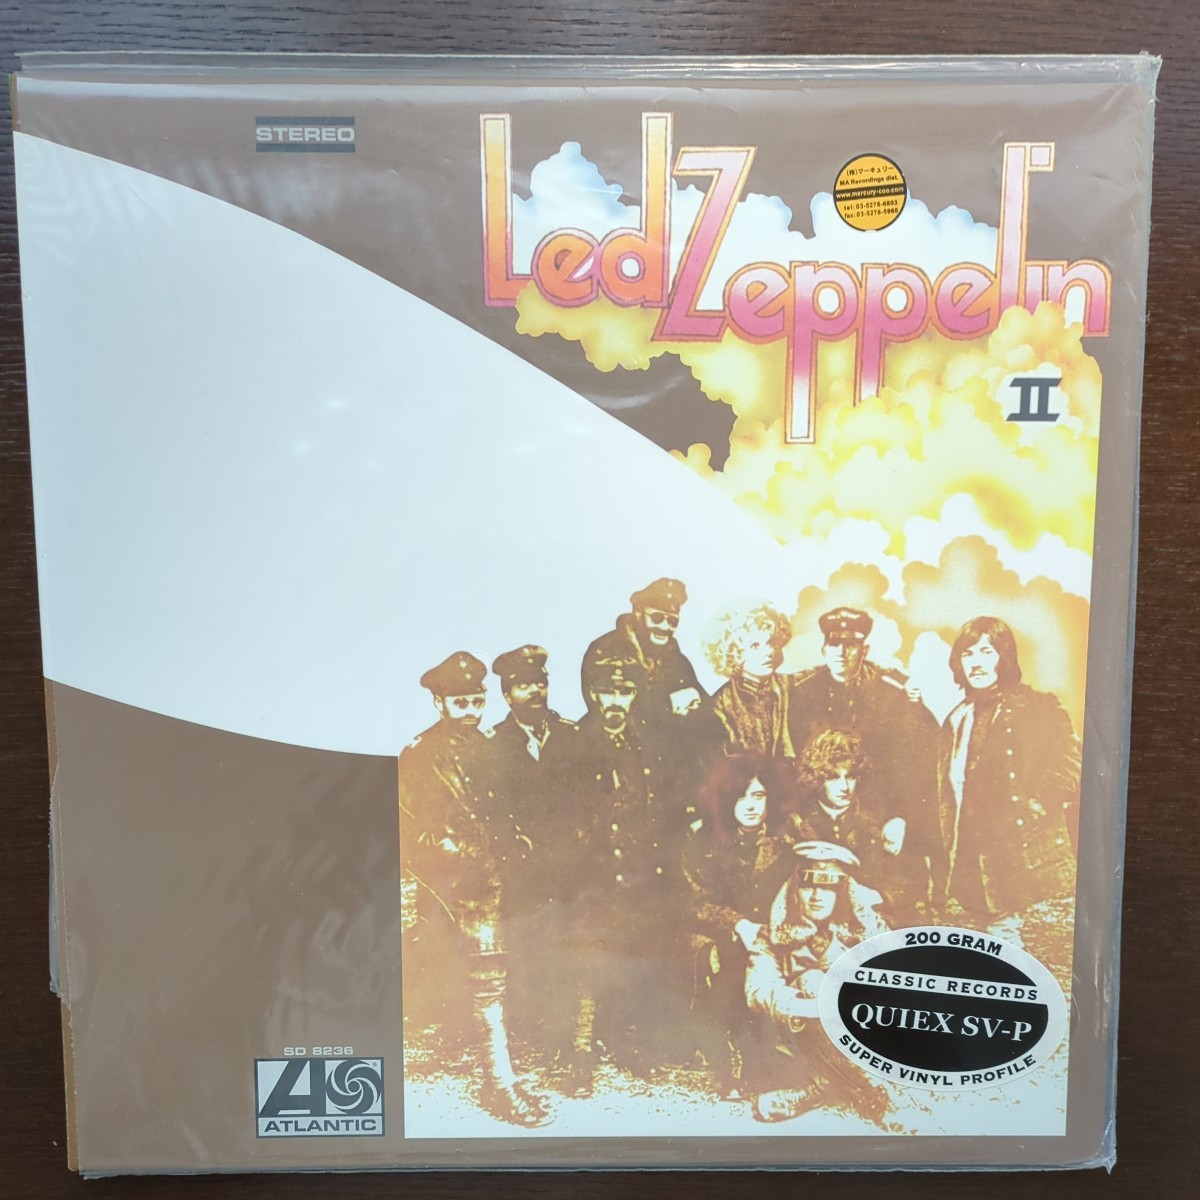 classic records led zeppelin レッド・ツェッペリン 2 Ⅱ クラシックレコーズ 200g Quiex-SVP recordレコード LP アナログ vinyl